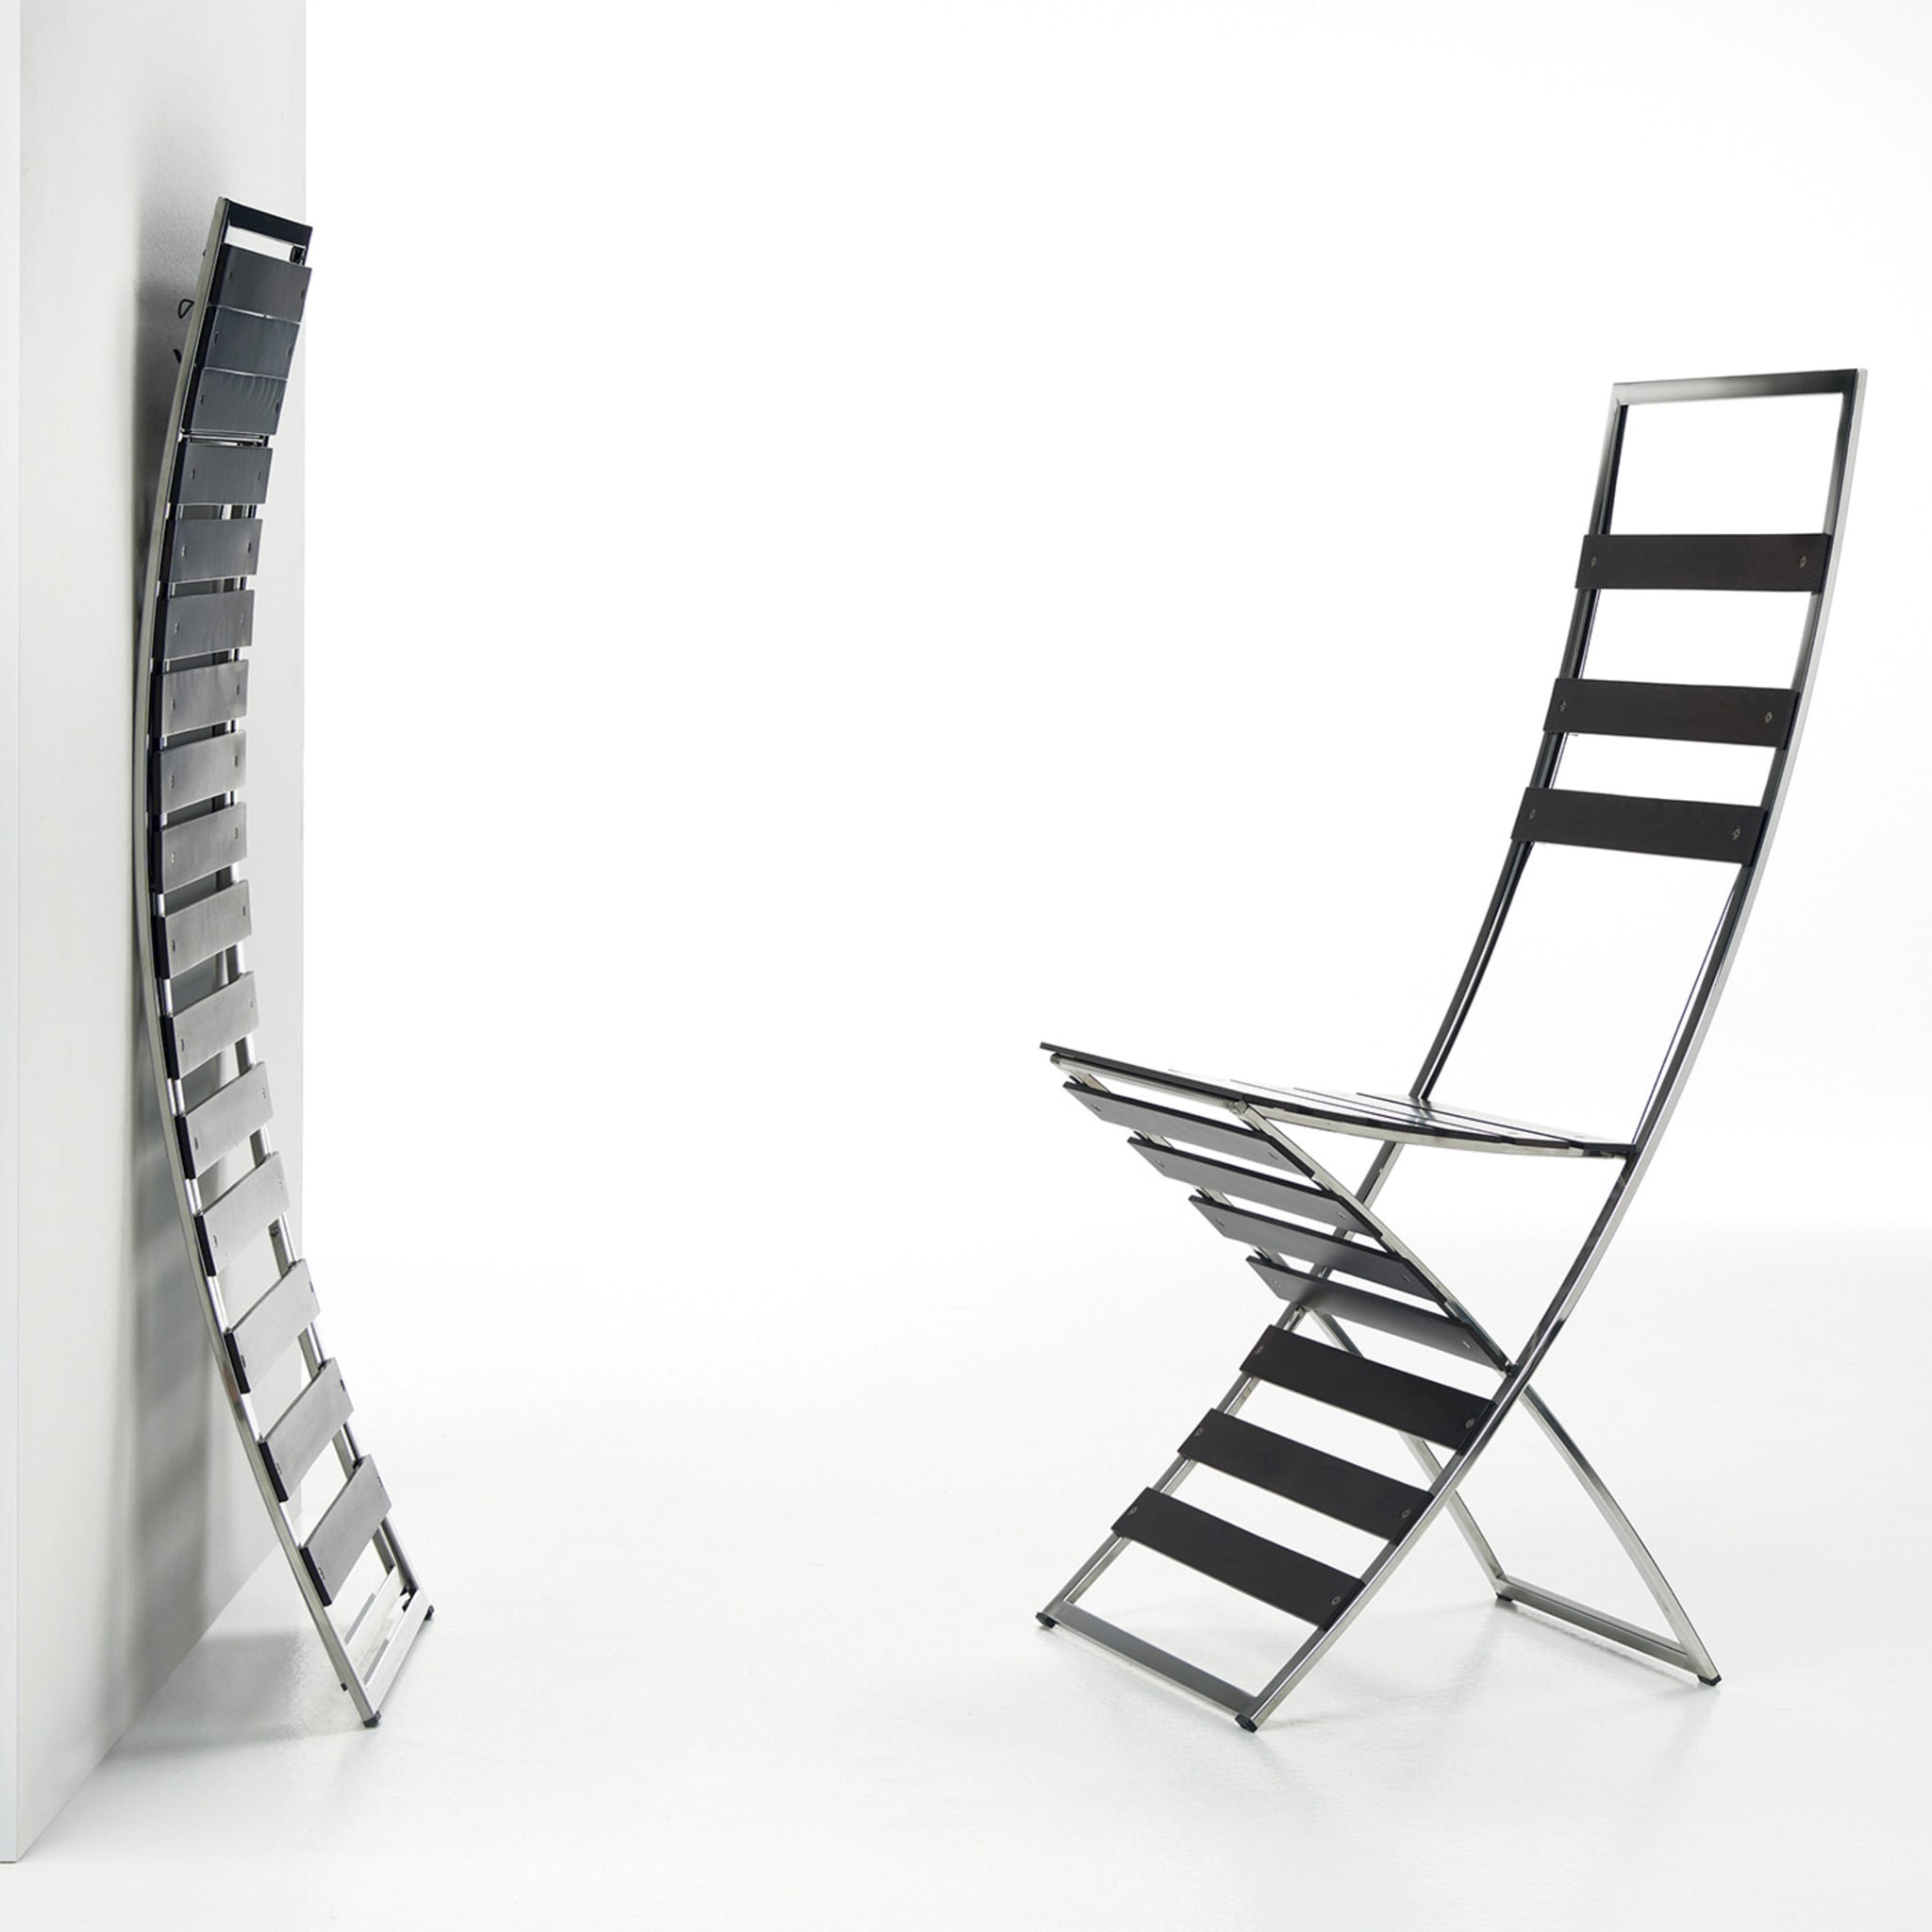 Plixy Chromed Folding Chair by Franco Poli - Alternative view 1